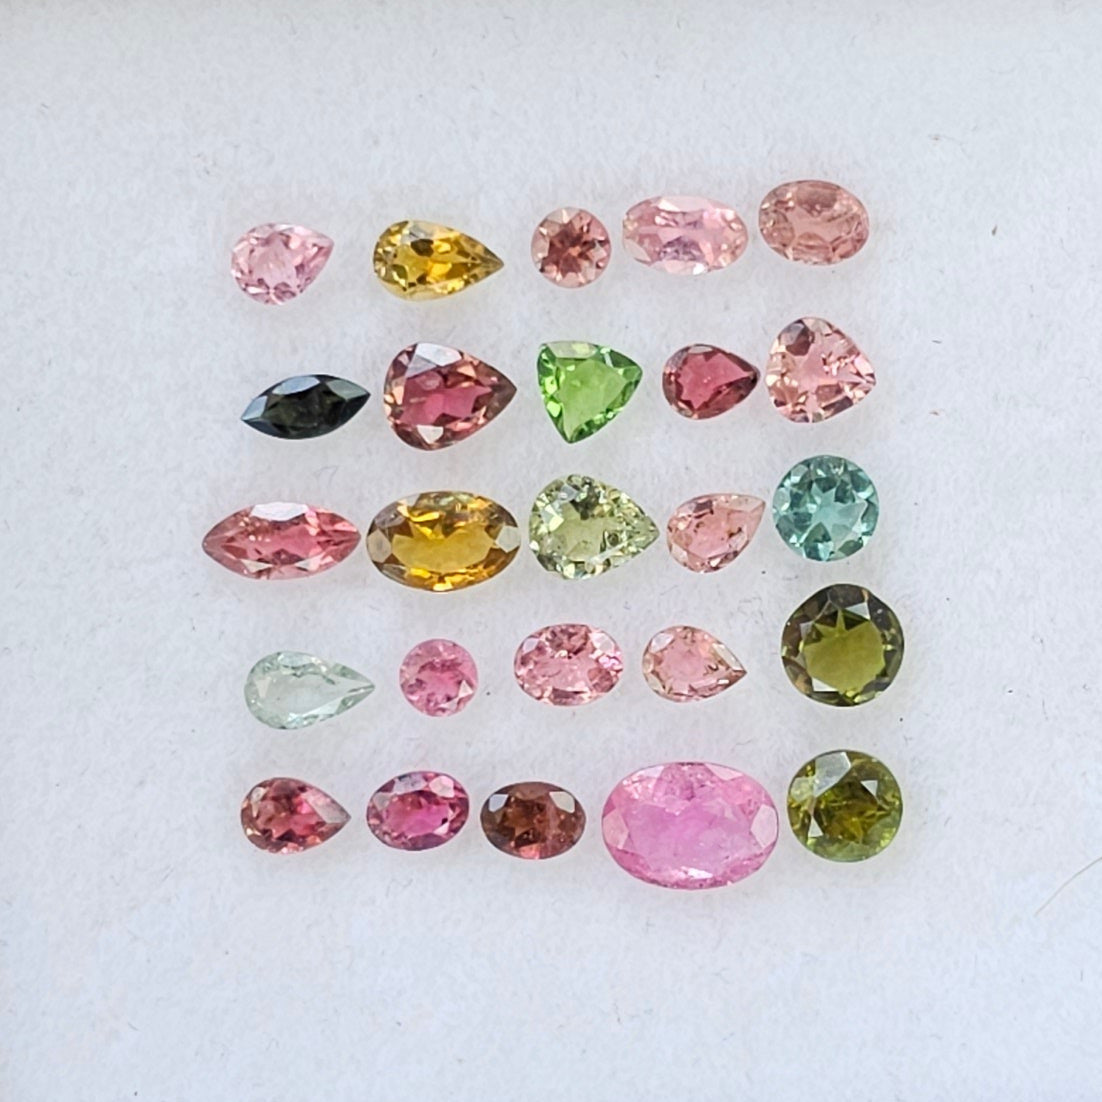 25 Pcs Natural Tourmaline Faceted Gemstone Mix Shape | 3-7mm - The LabradoriteKing